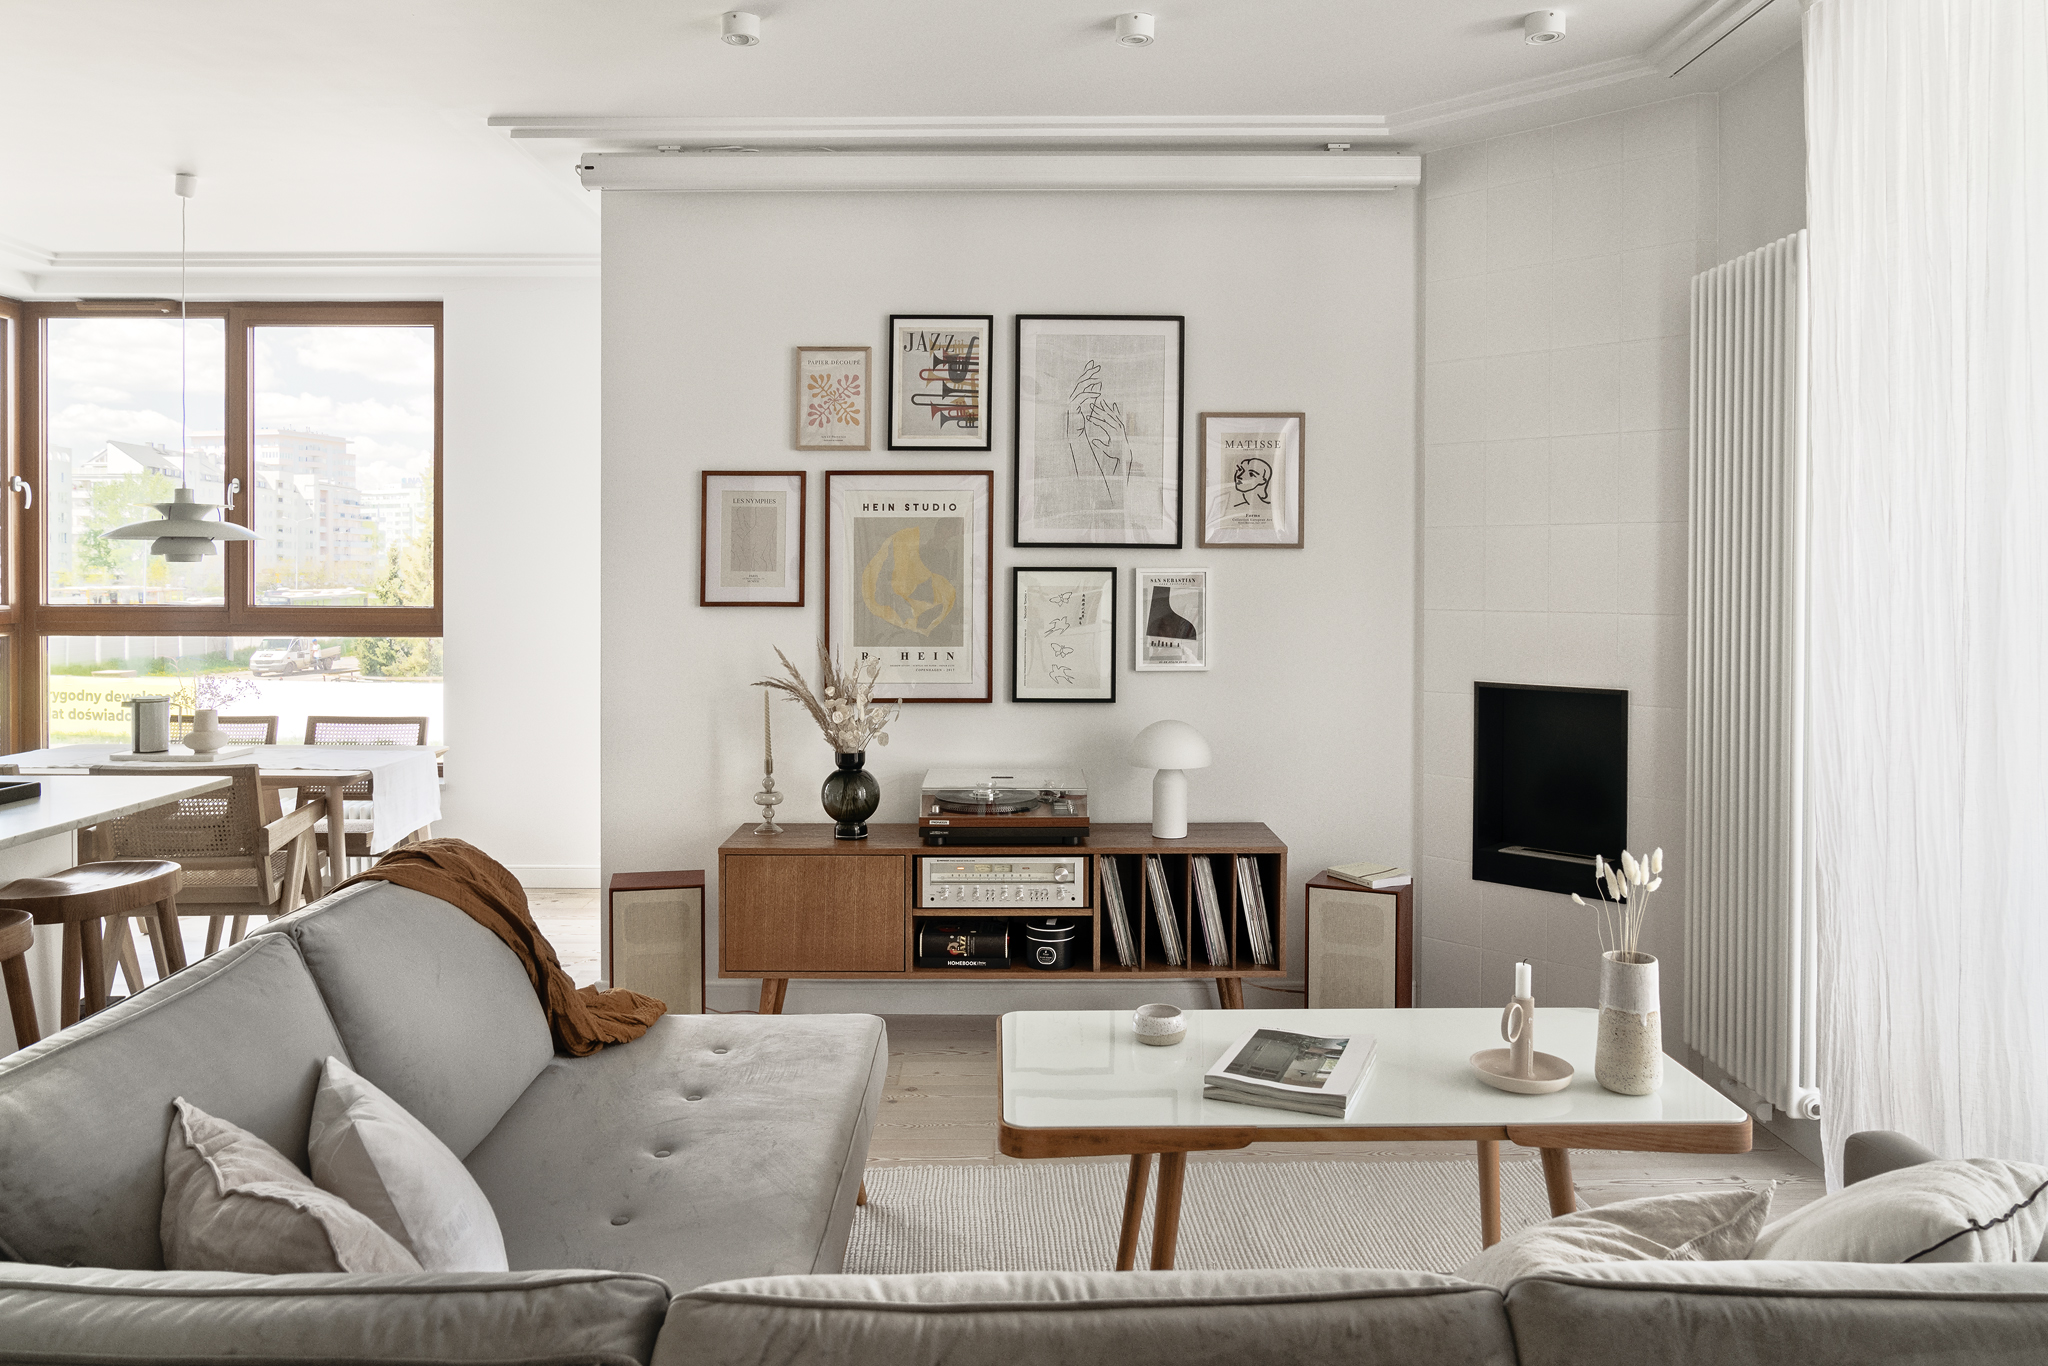 Jasne mieszkanie w stylu mid-century modern, inspirowane Skandynawią. Projekt: pracownia Luumo. Zdjęcia: Tom Kurek